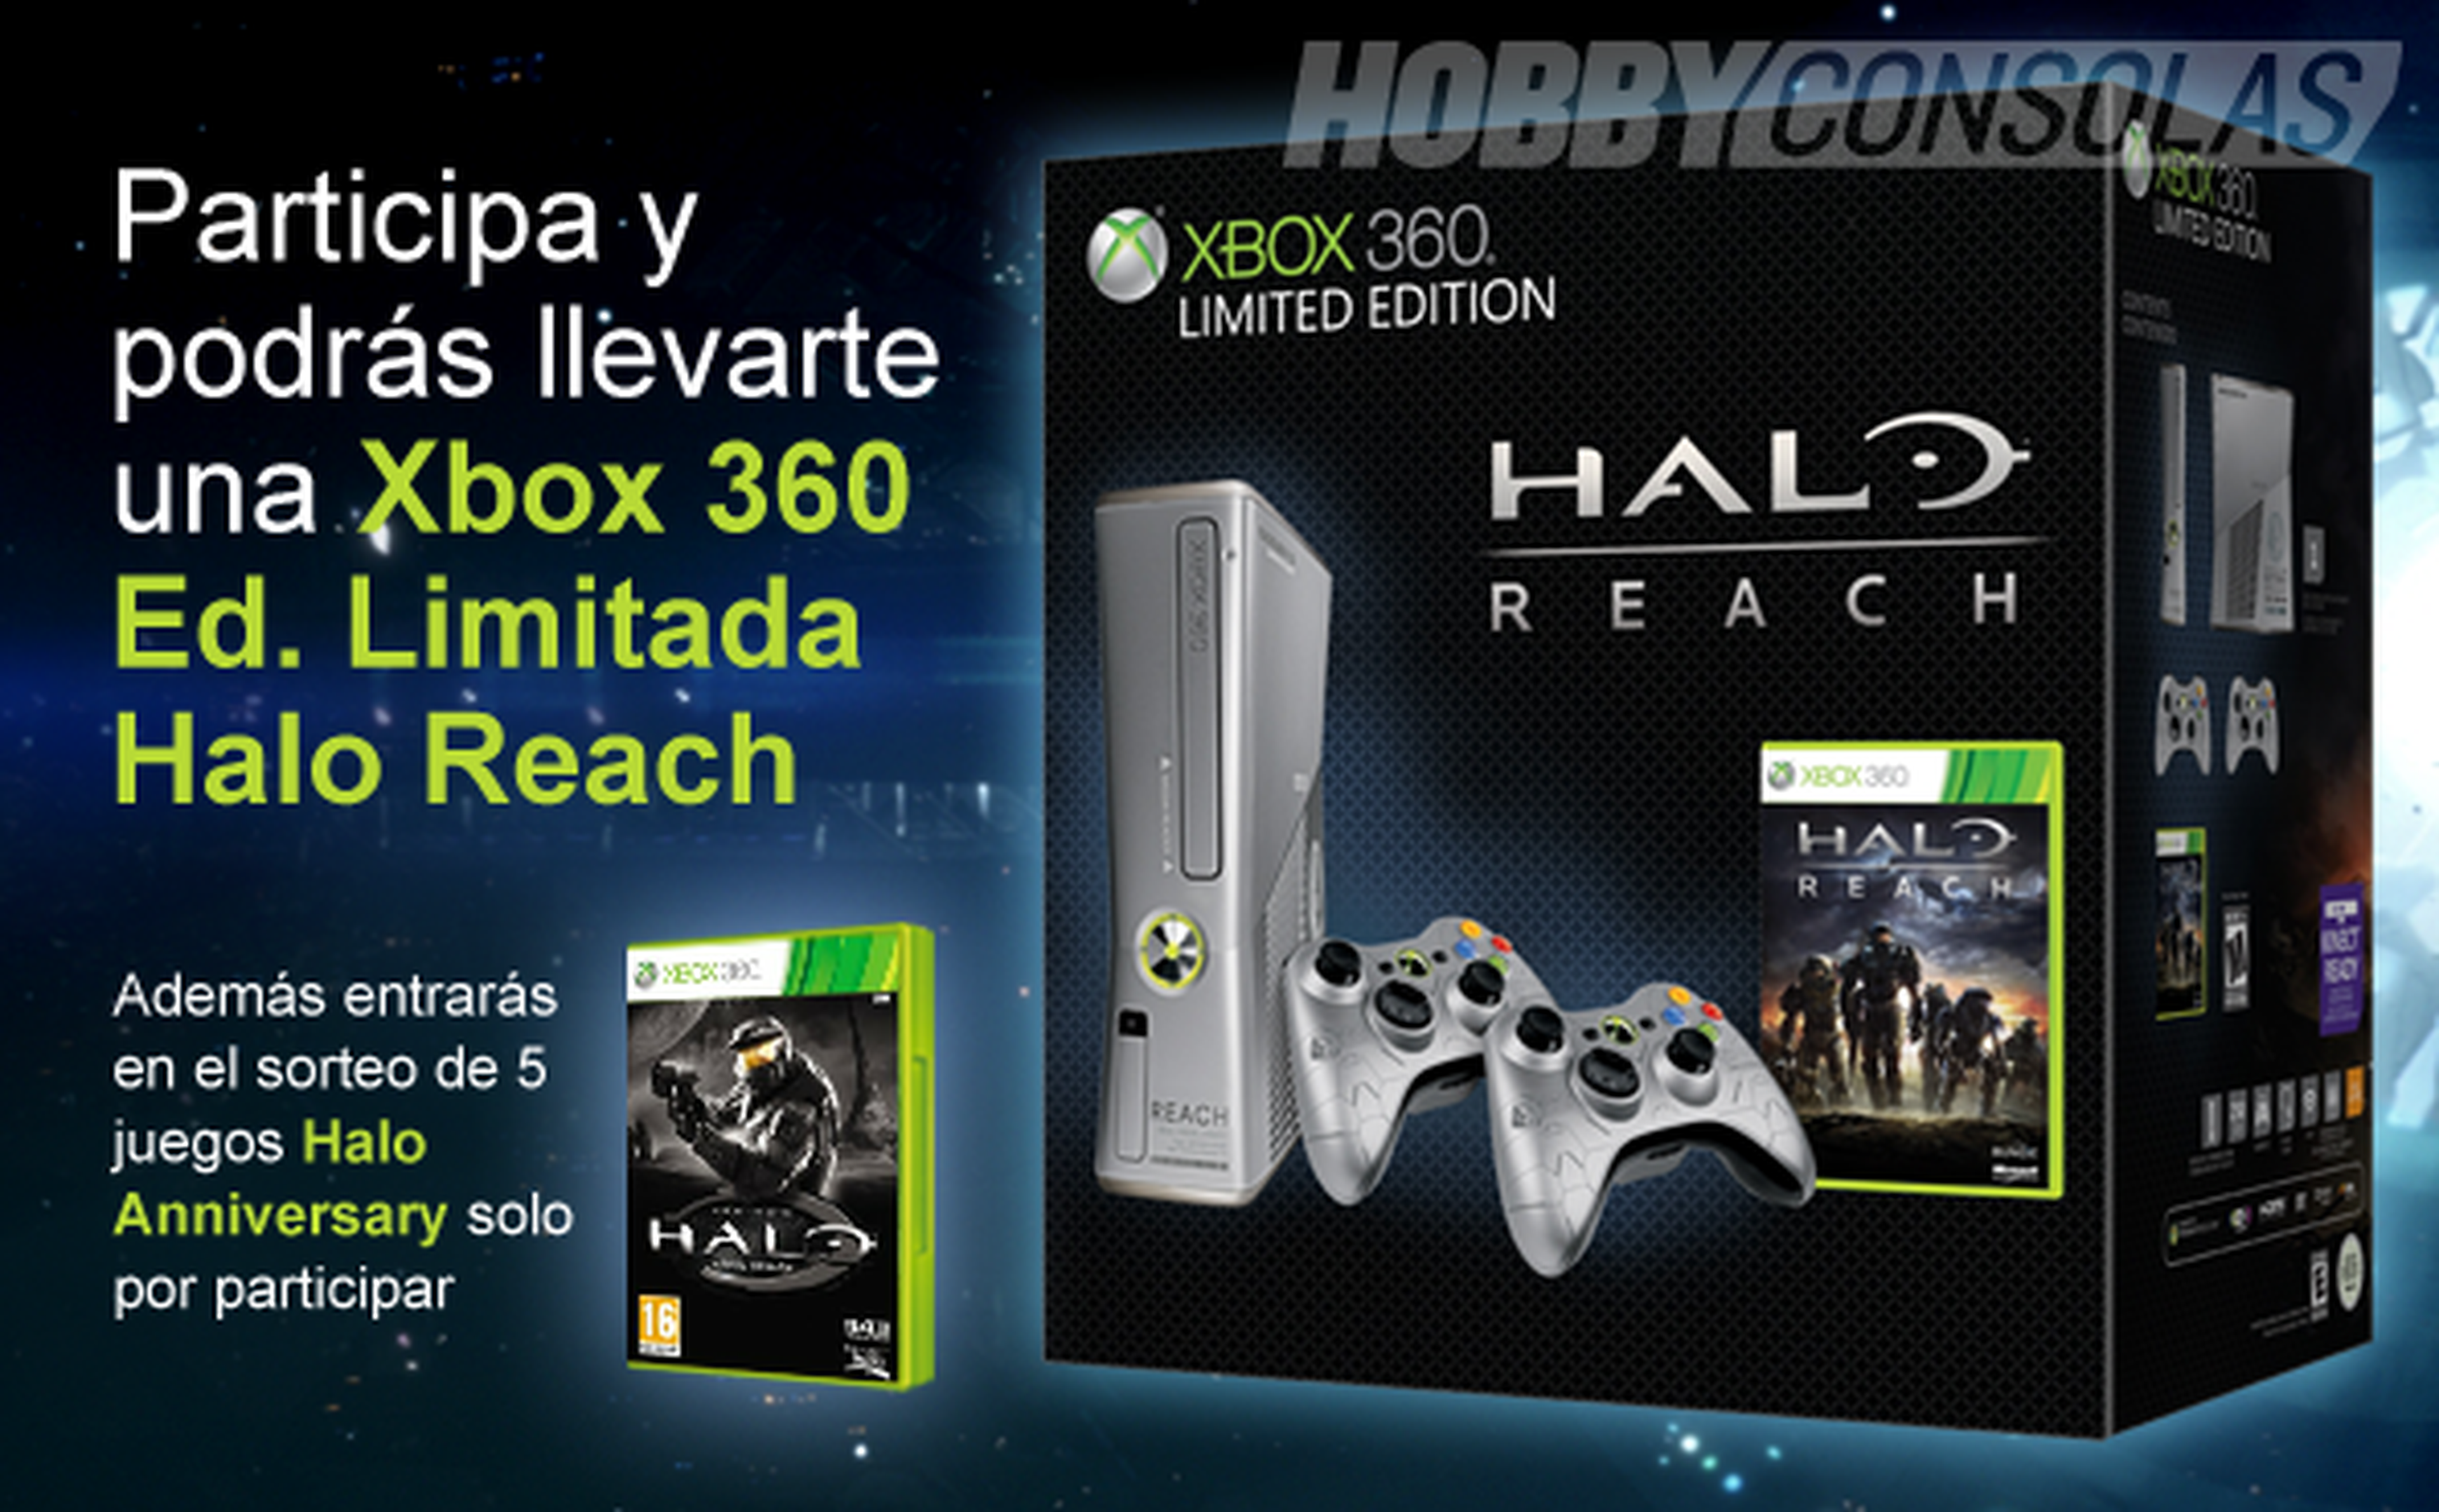 Concurso Cosplay de Halo en Hobbynews.es